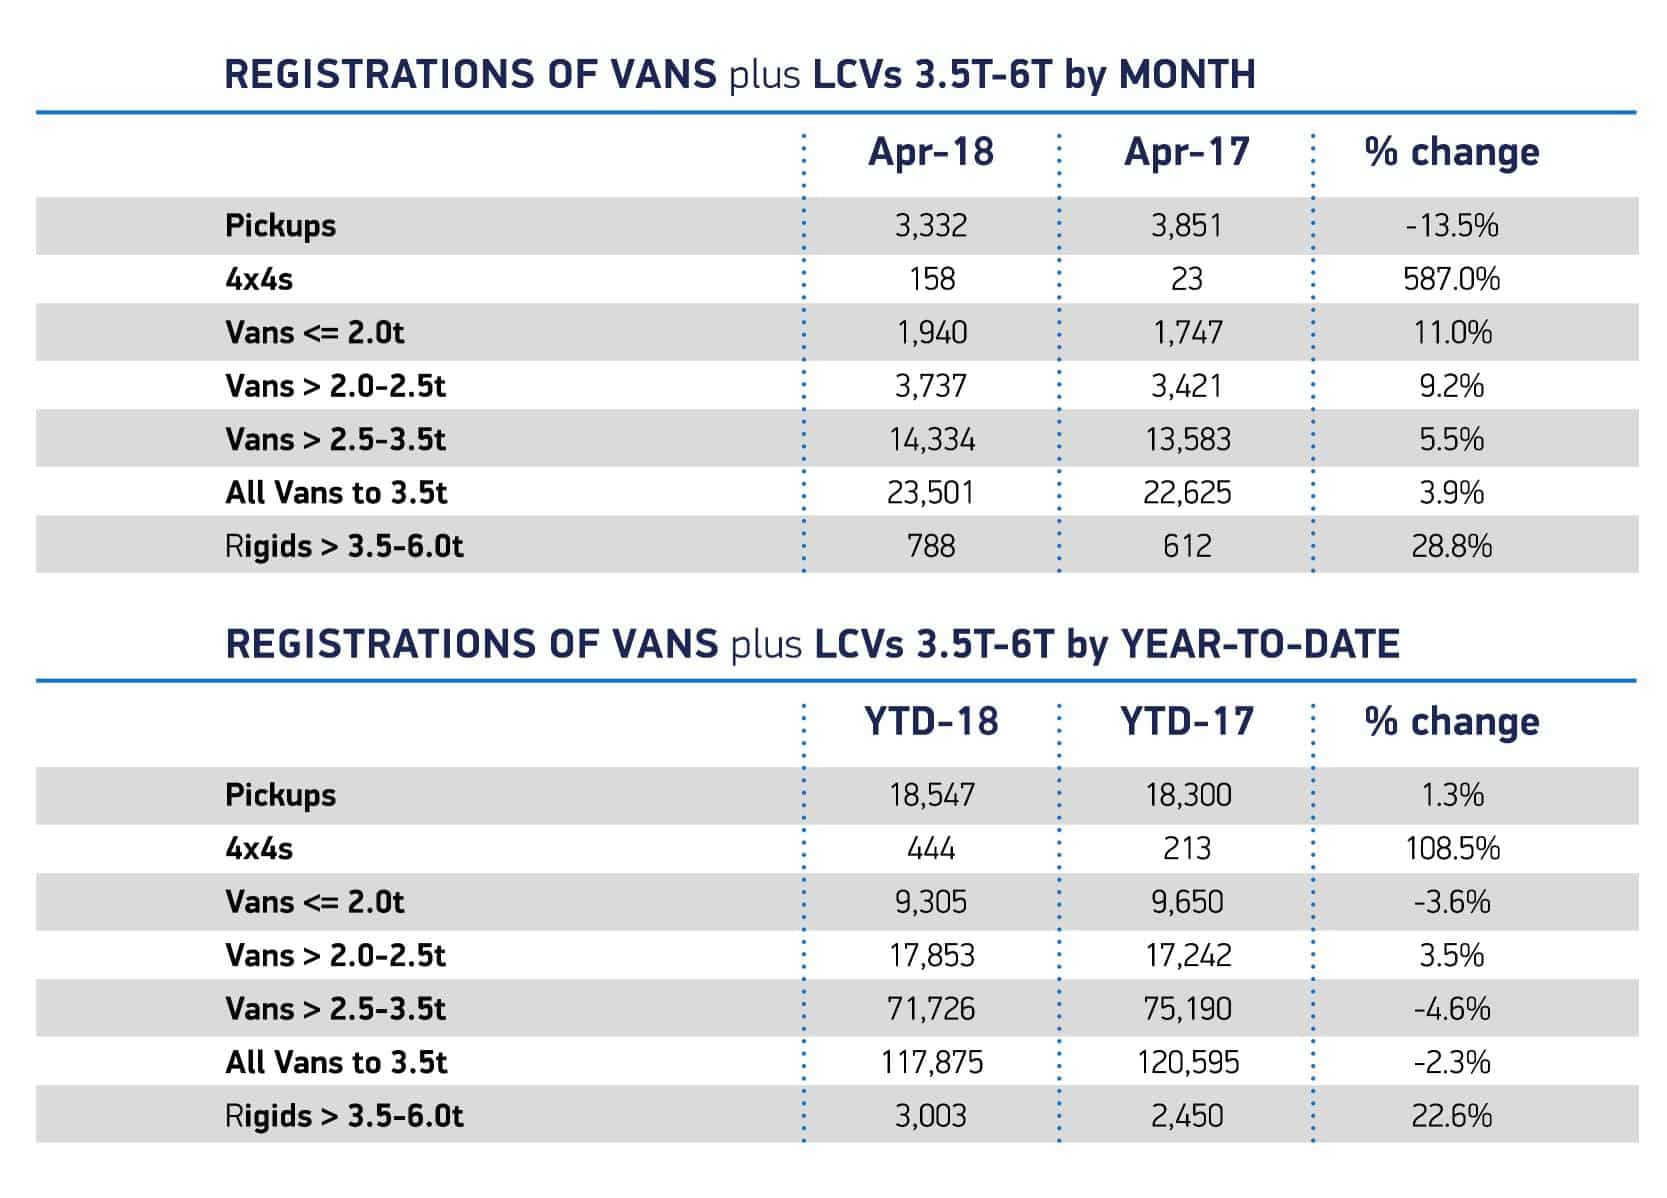 April 2018 new van market registrations